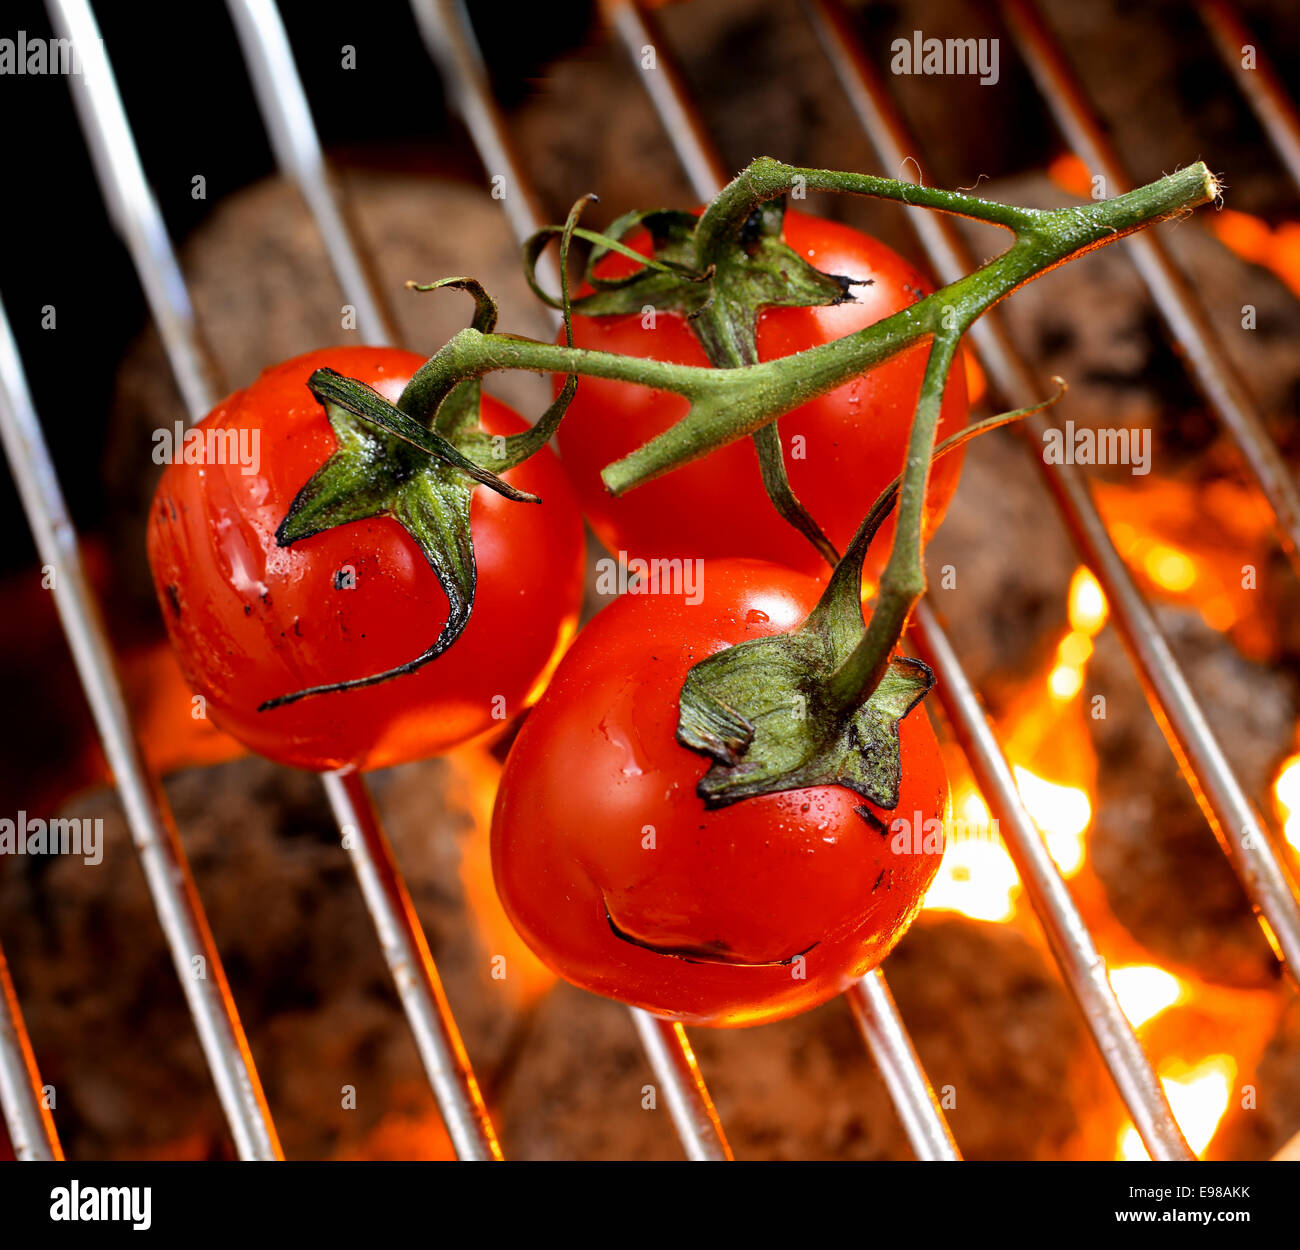 Mazzetto di ripe rosso pomodori ciliegia sulla vite tostatura su un barbecue fire, ad alto angolo di visione della griglia e carbone incandescente Foto Stock